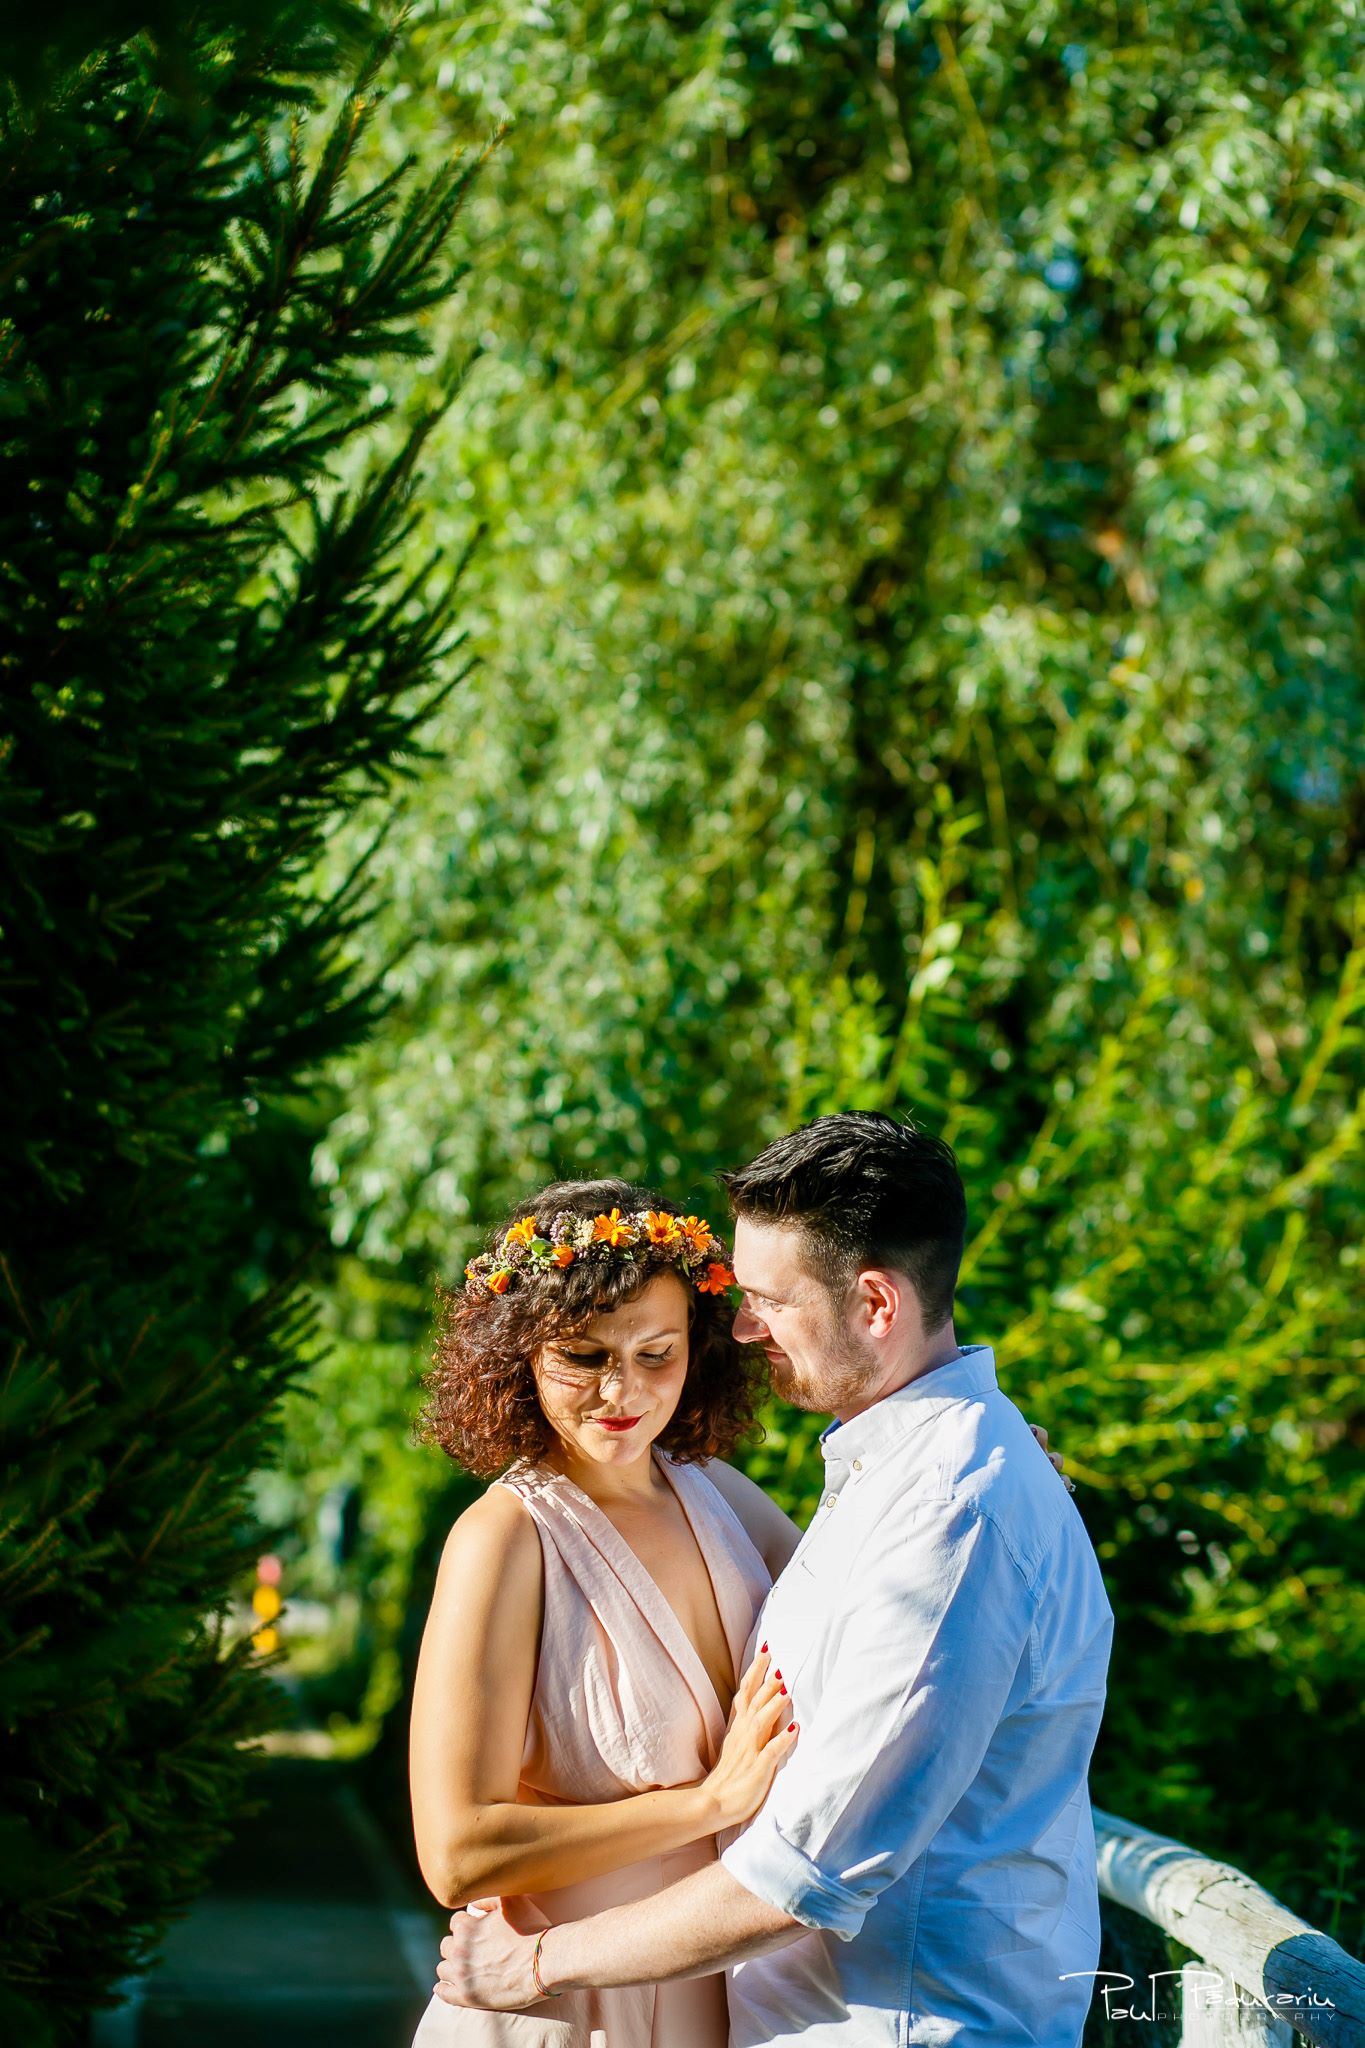 Mircea si Adina - shooting outdoor fotografie logodna | paul padurariu fotograf iasi 2019 1